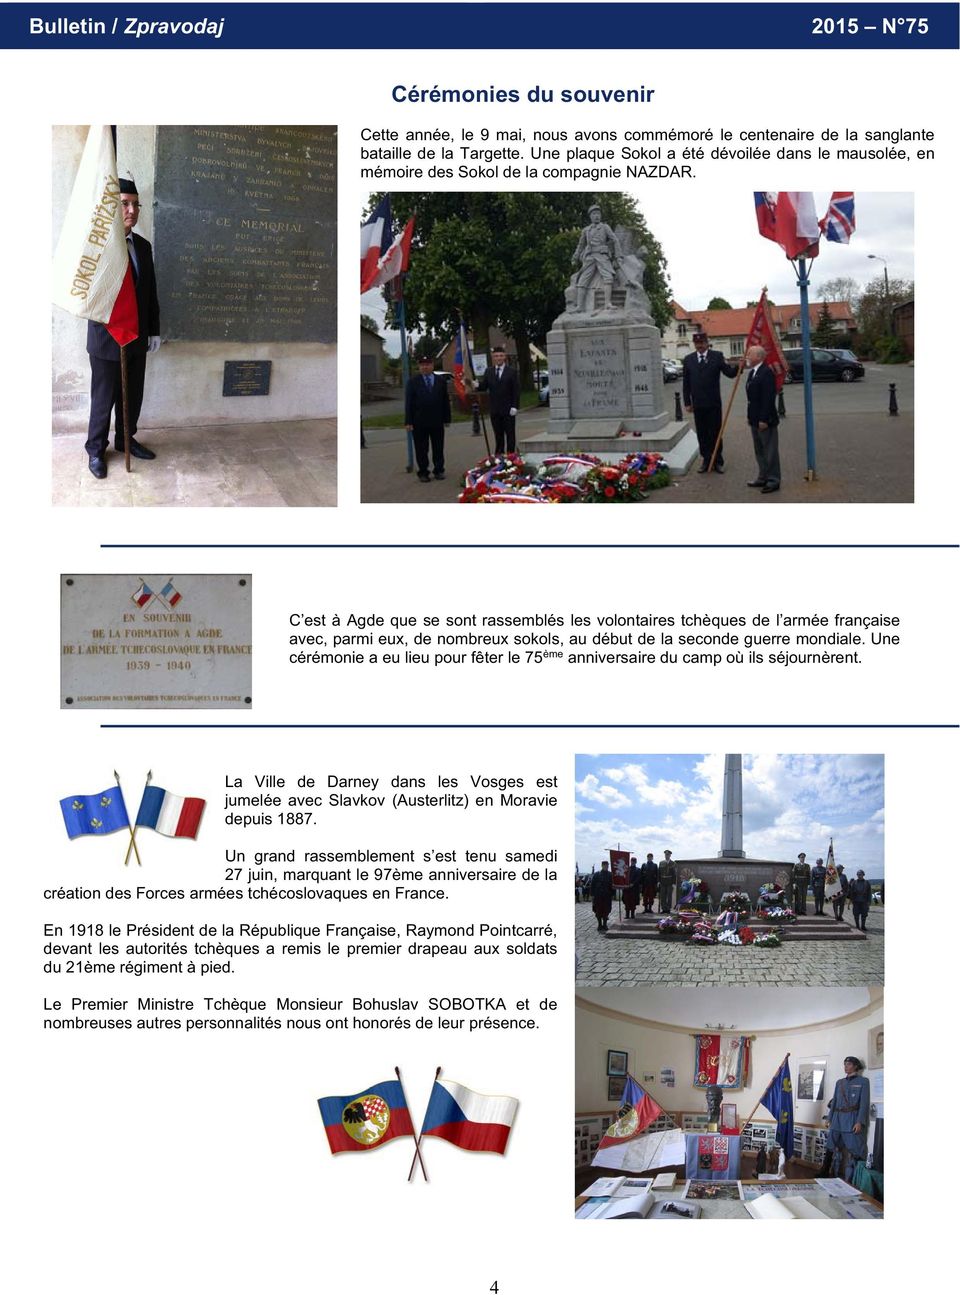 C est à Agde que se sont rassemblés les volontaires tchèques de l armée française avec, parmi eux, de nombreux sokols, au début de la seconde guerre mondiale.